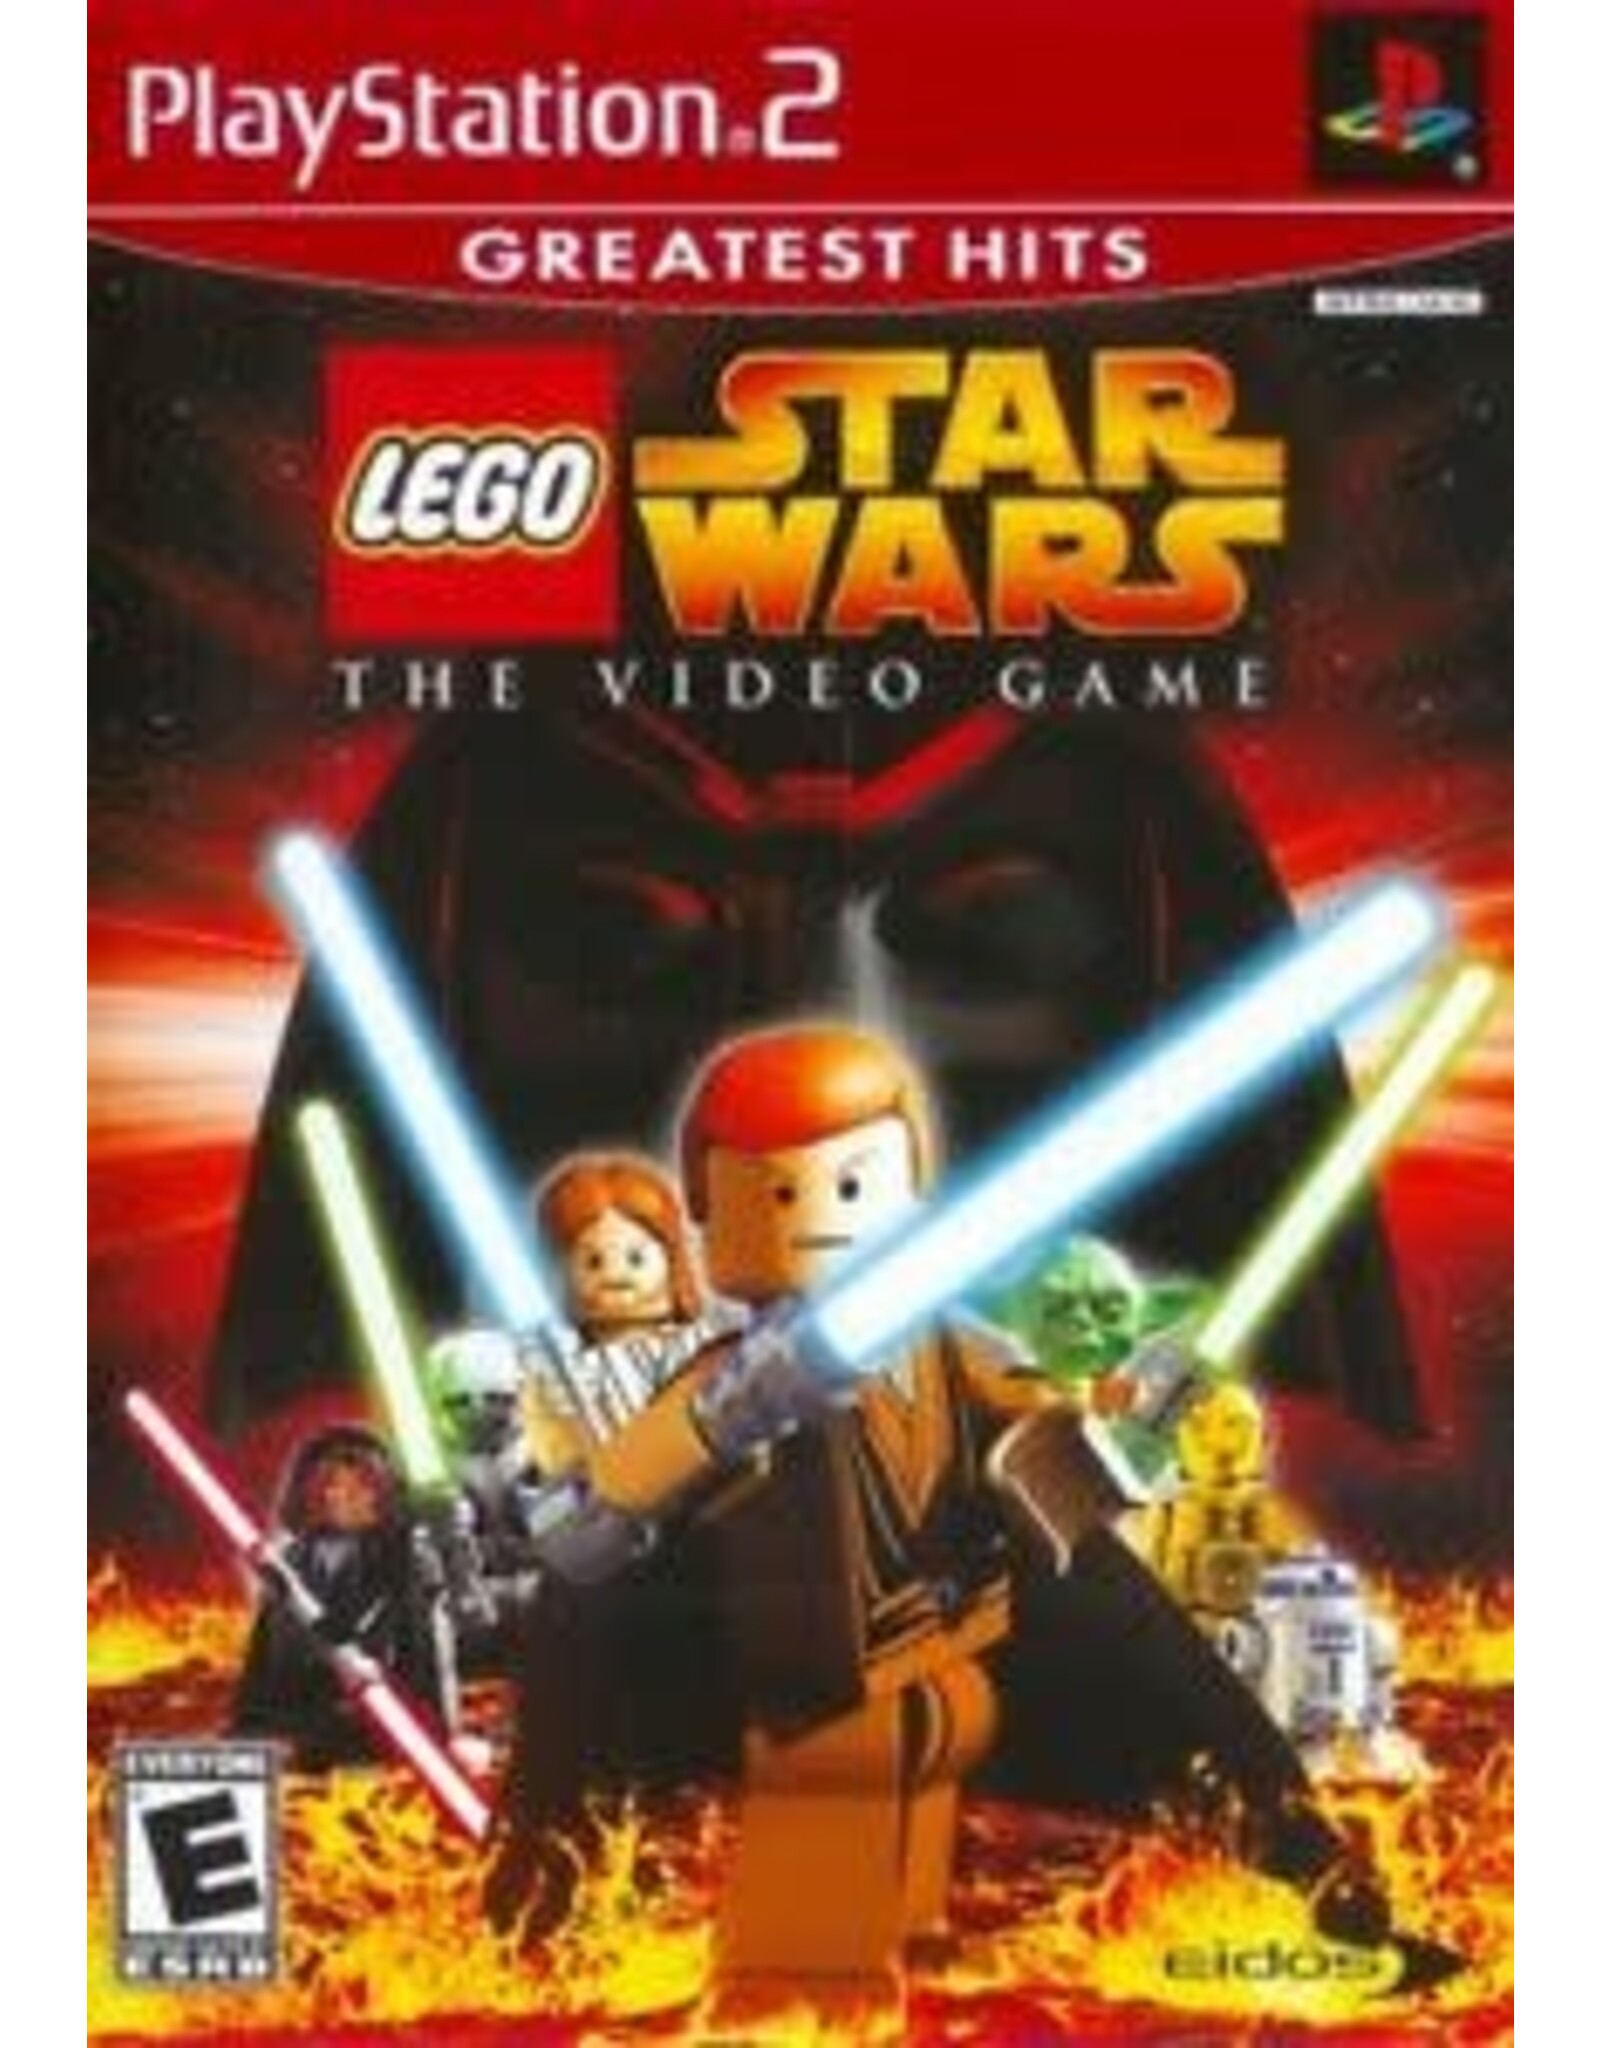 Playstation 2 LEGO Star Wars (Greatest Hits, CiB)